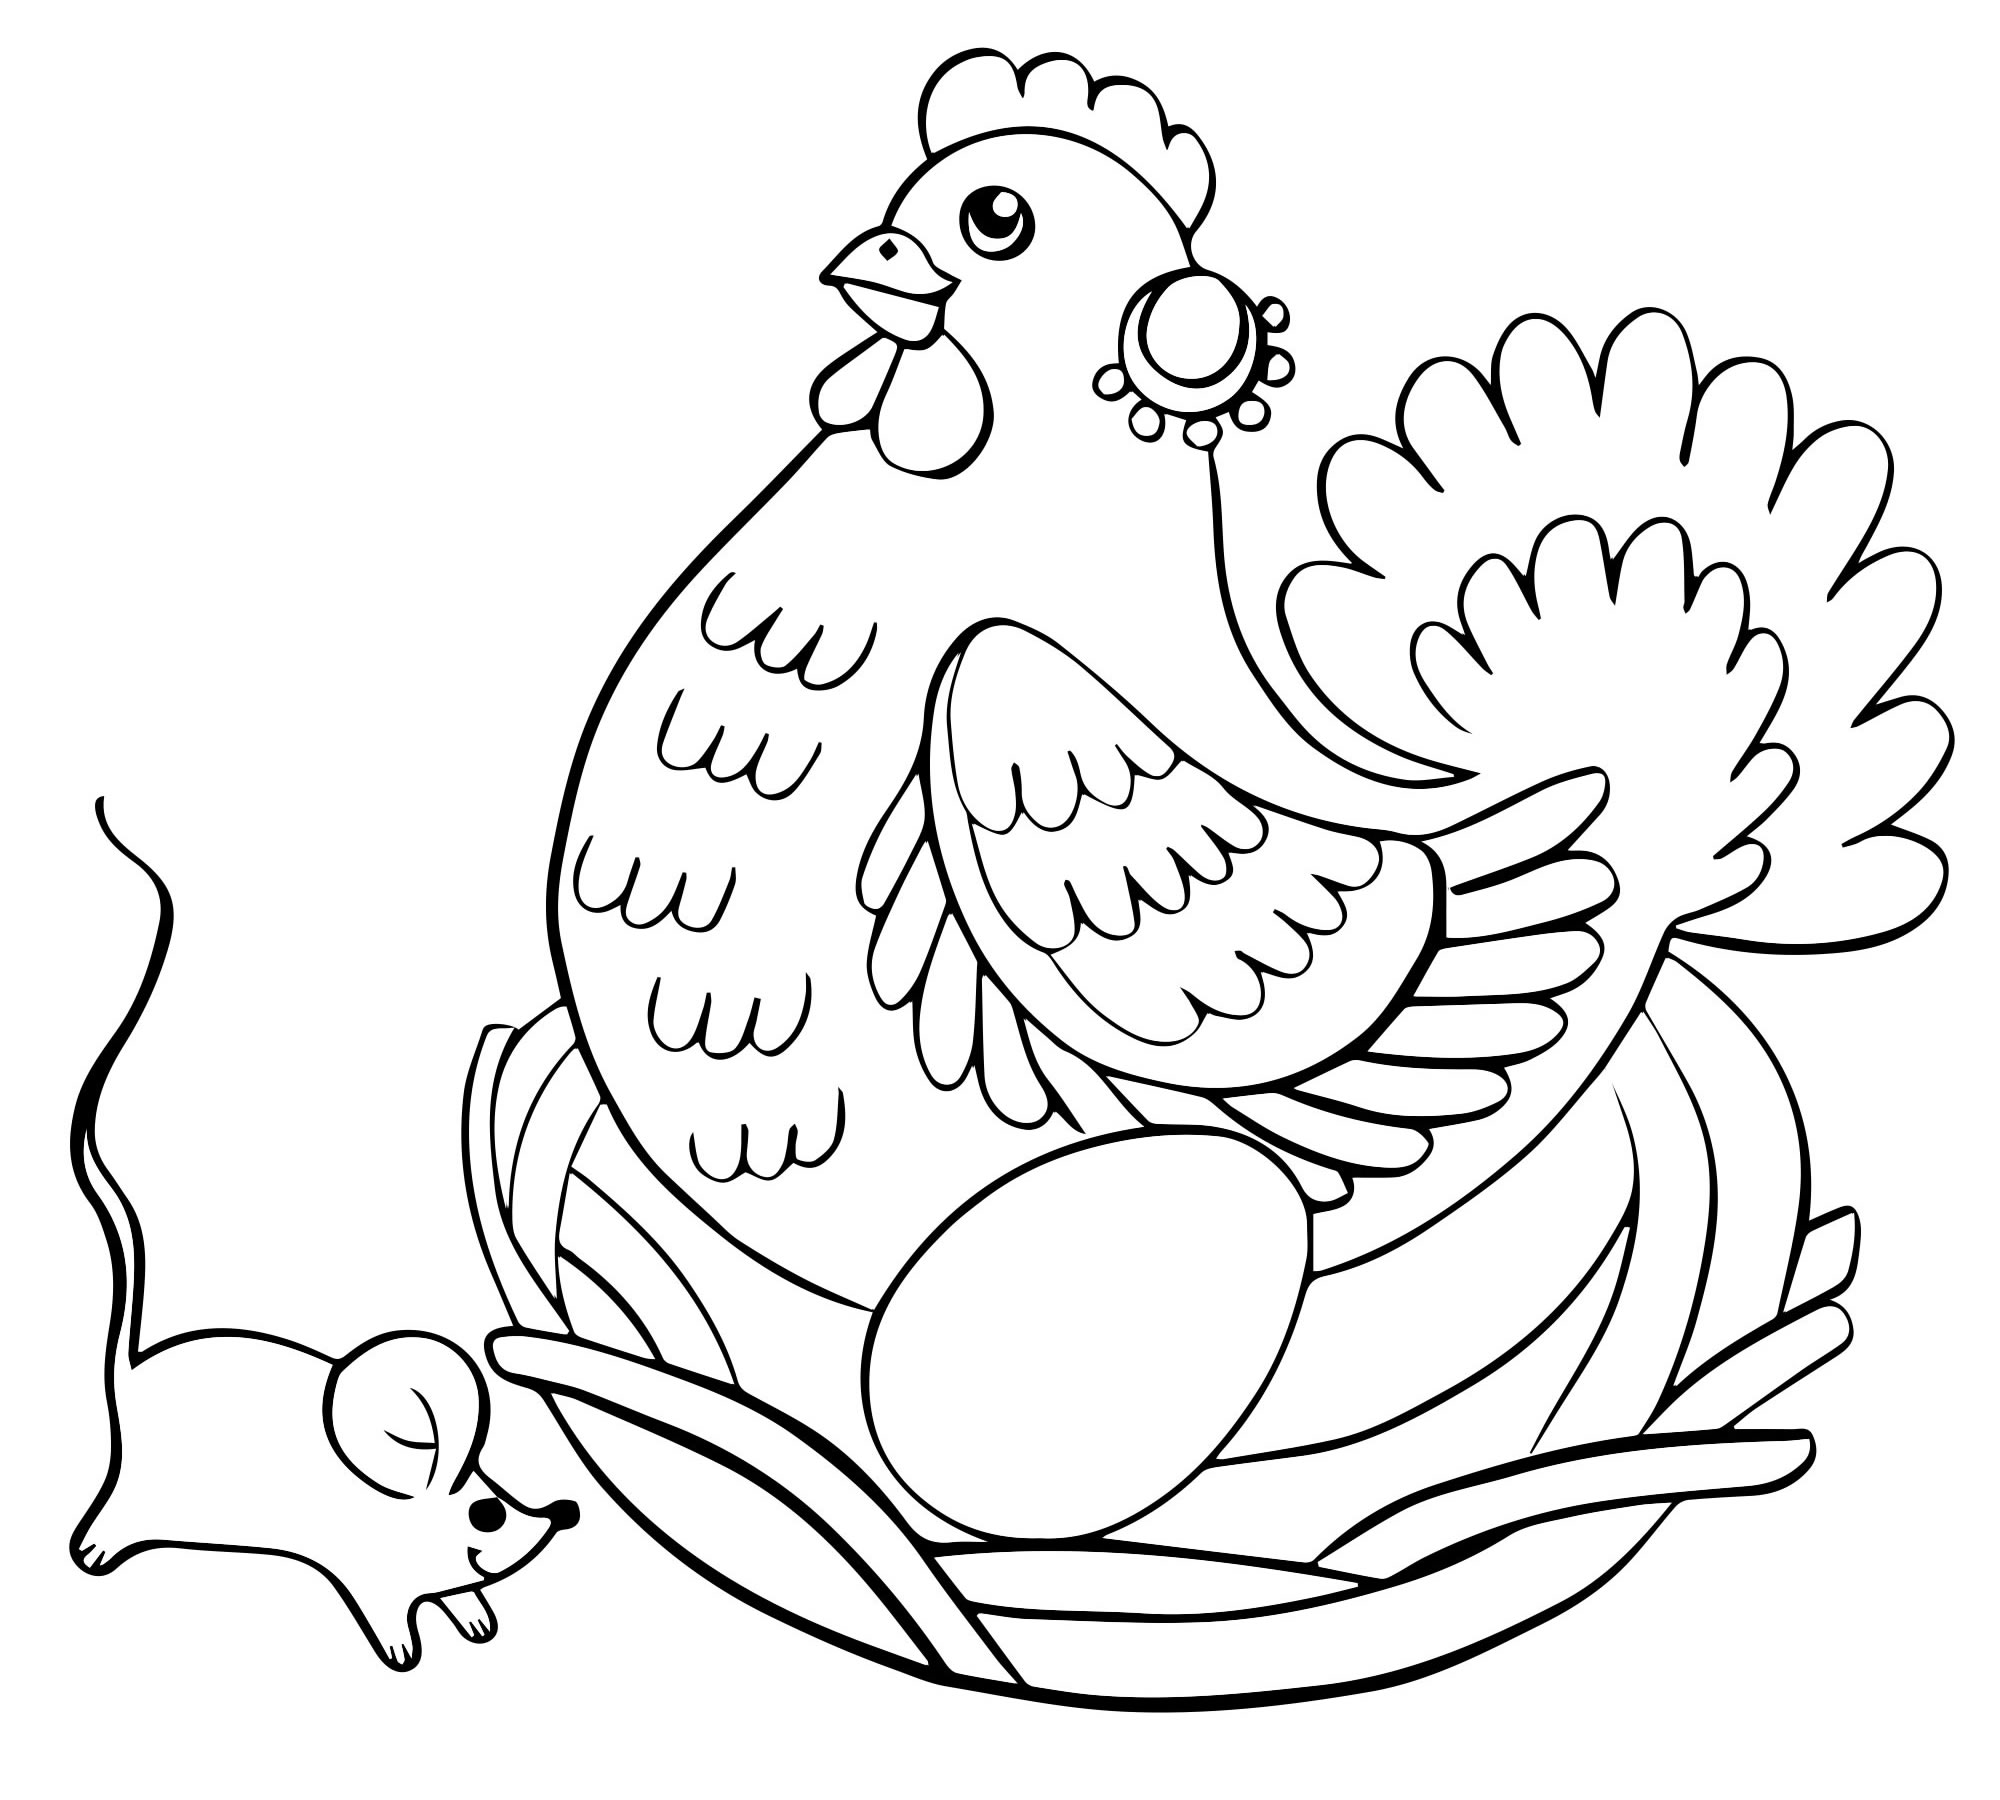 Знакомство со сказкой «Цыплёнок» К. Чуковского. Рекомендации для родителей к дистанционному занятию